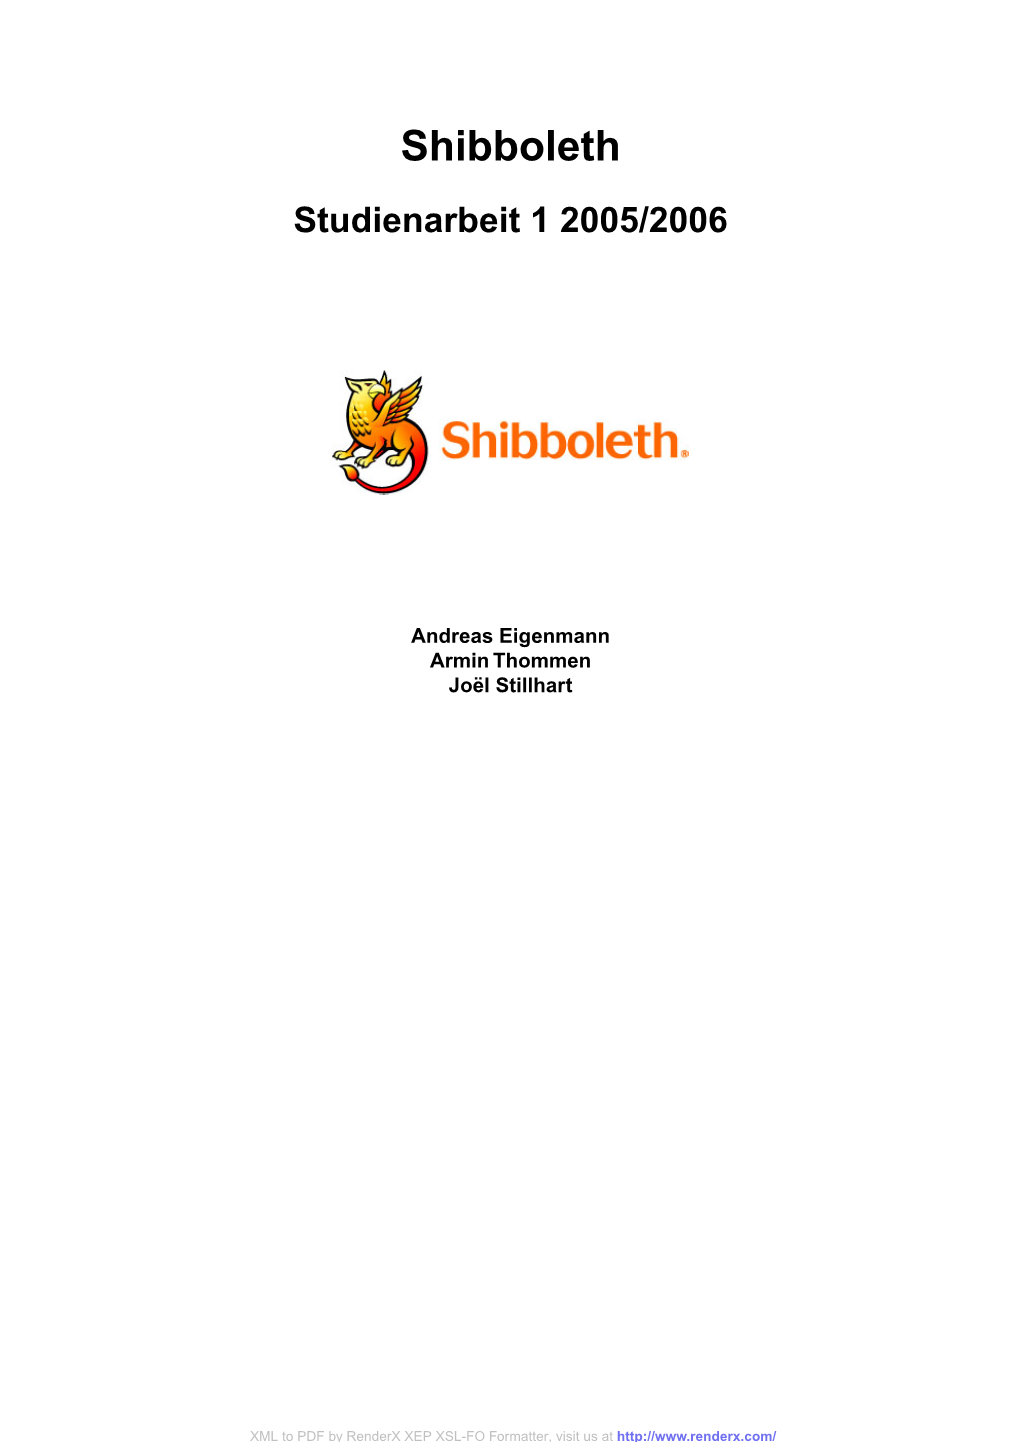 Shibboleth Studienarbeit 1 2005/2006